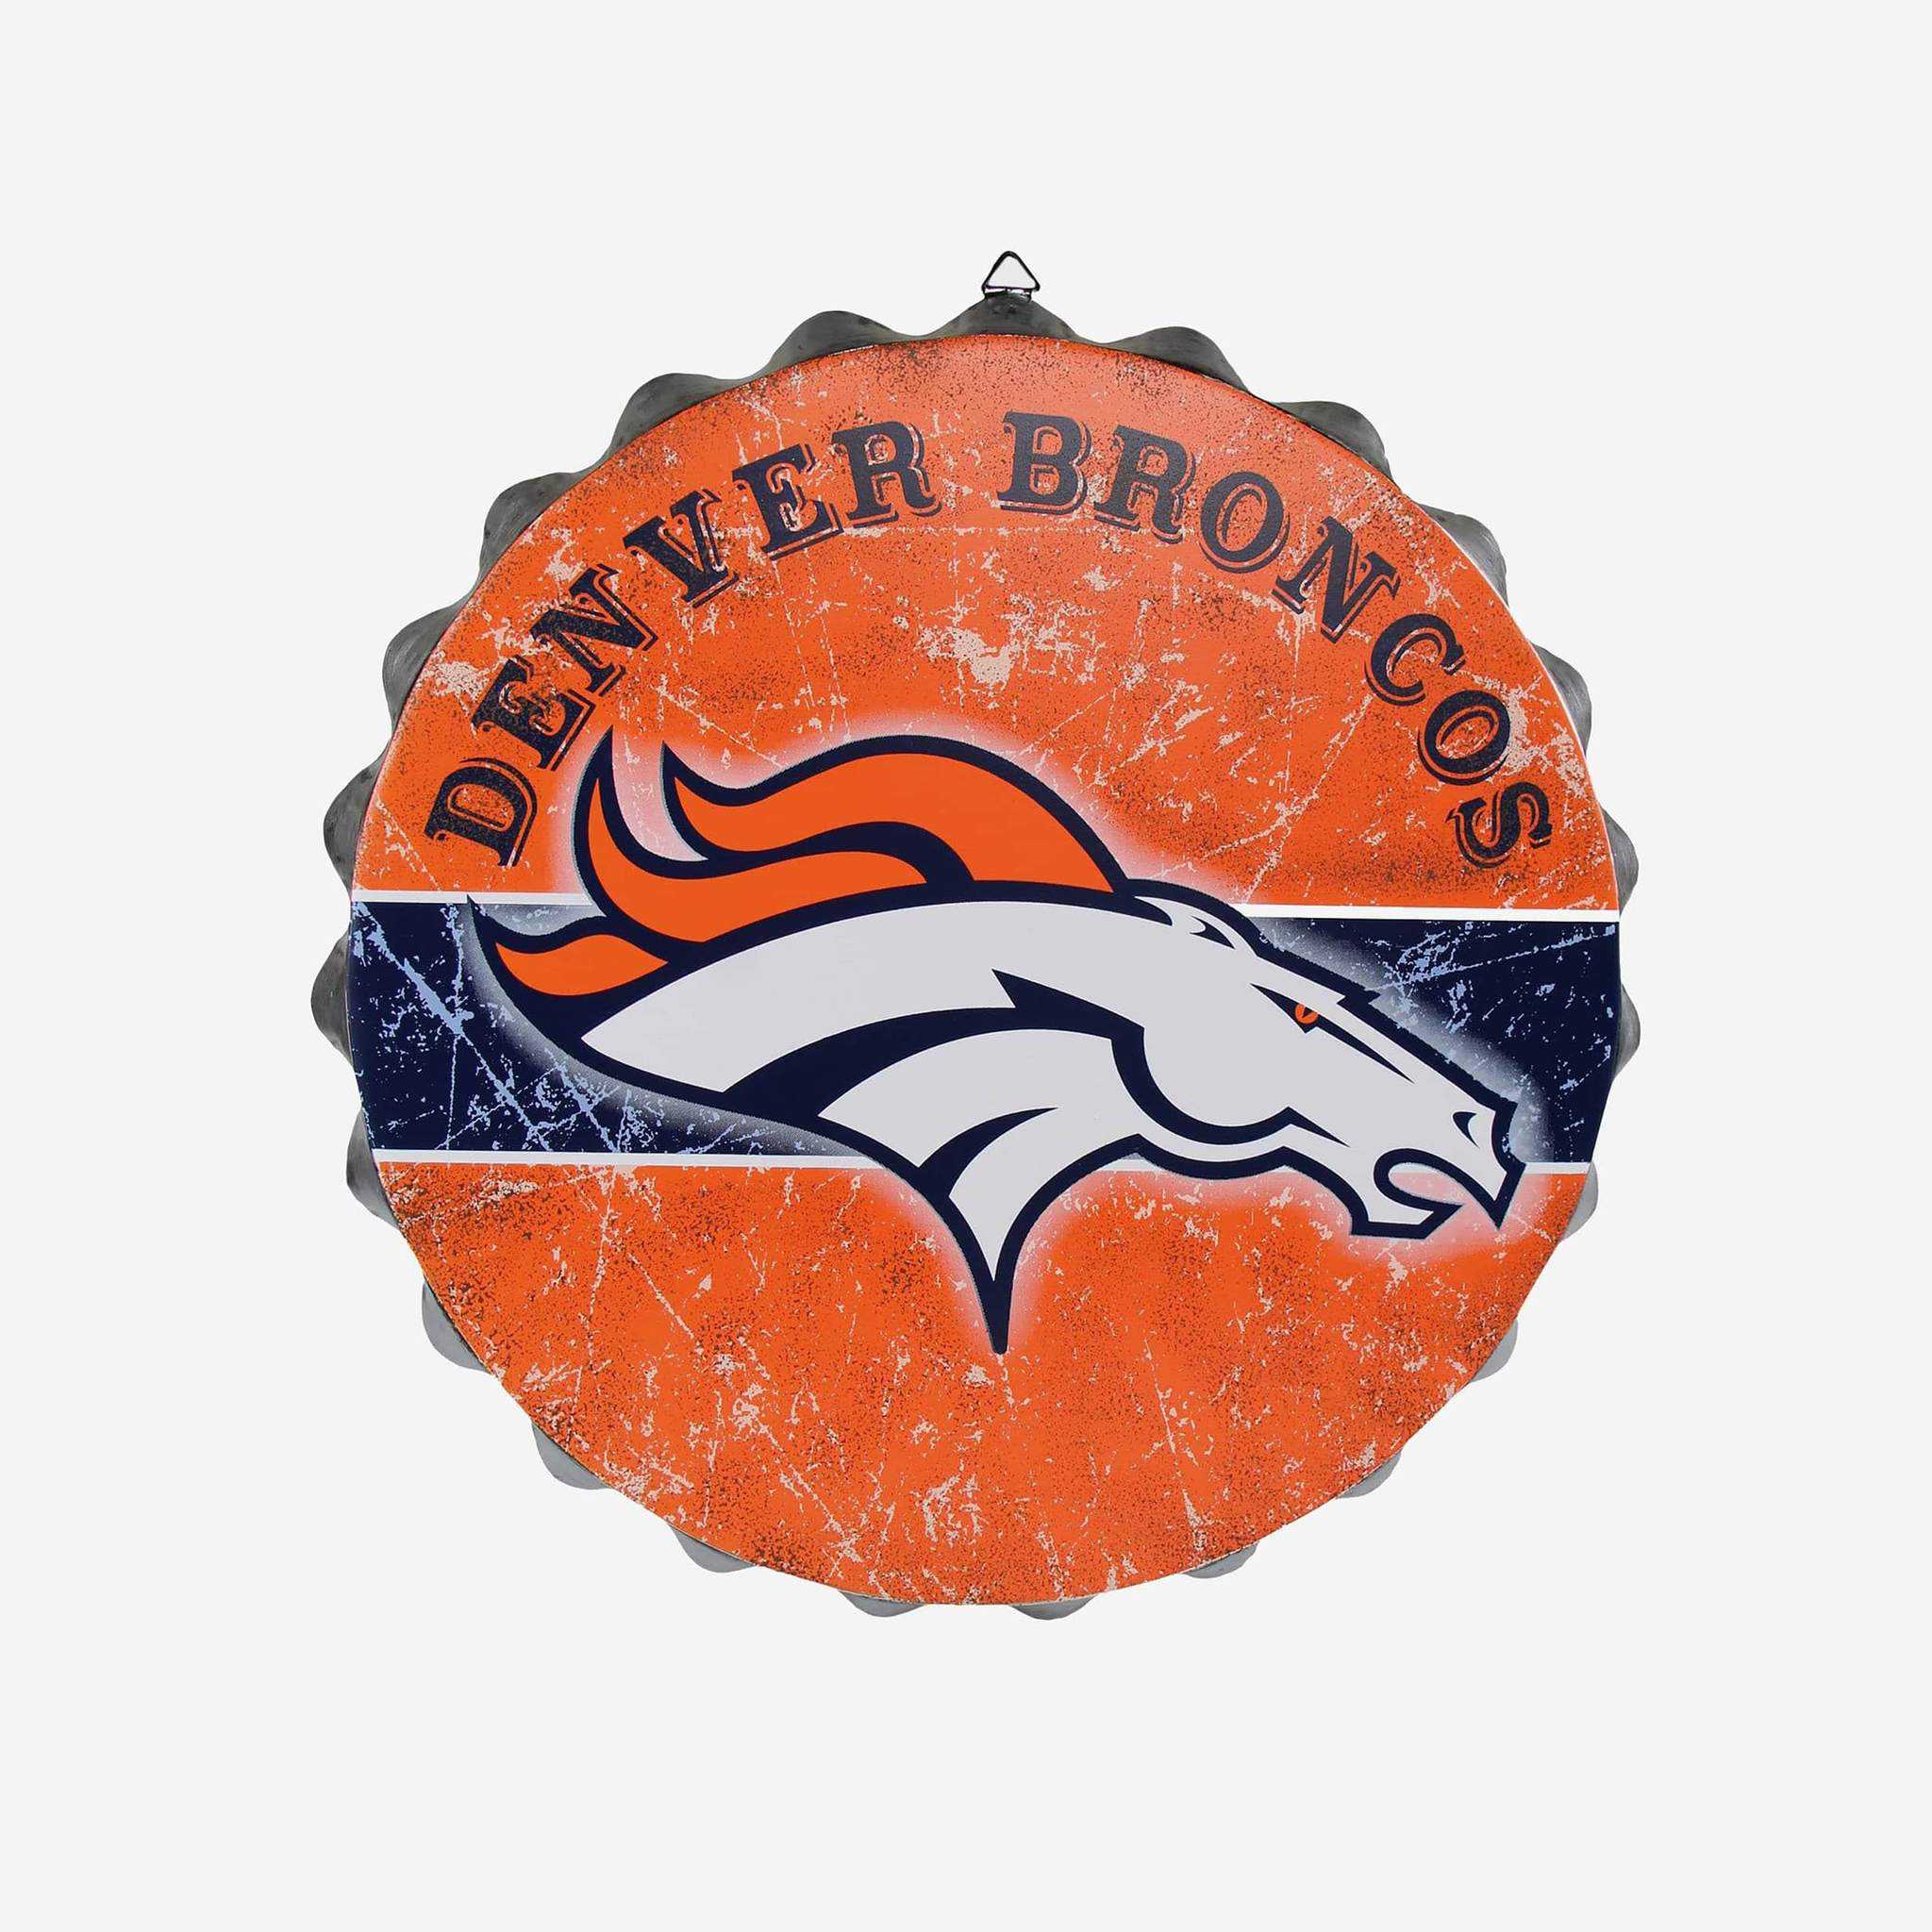 Metal Distressed Bottle Cap Sign-Denver Broncos